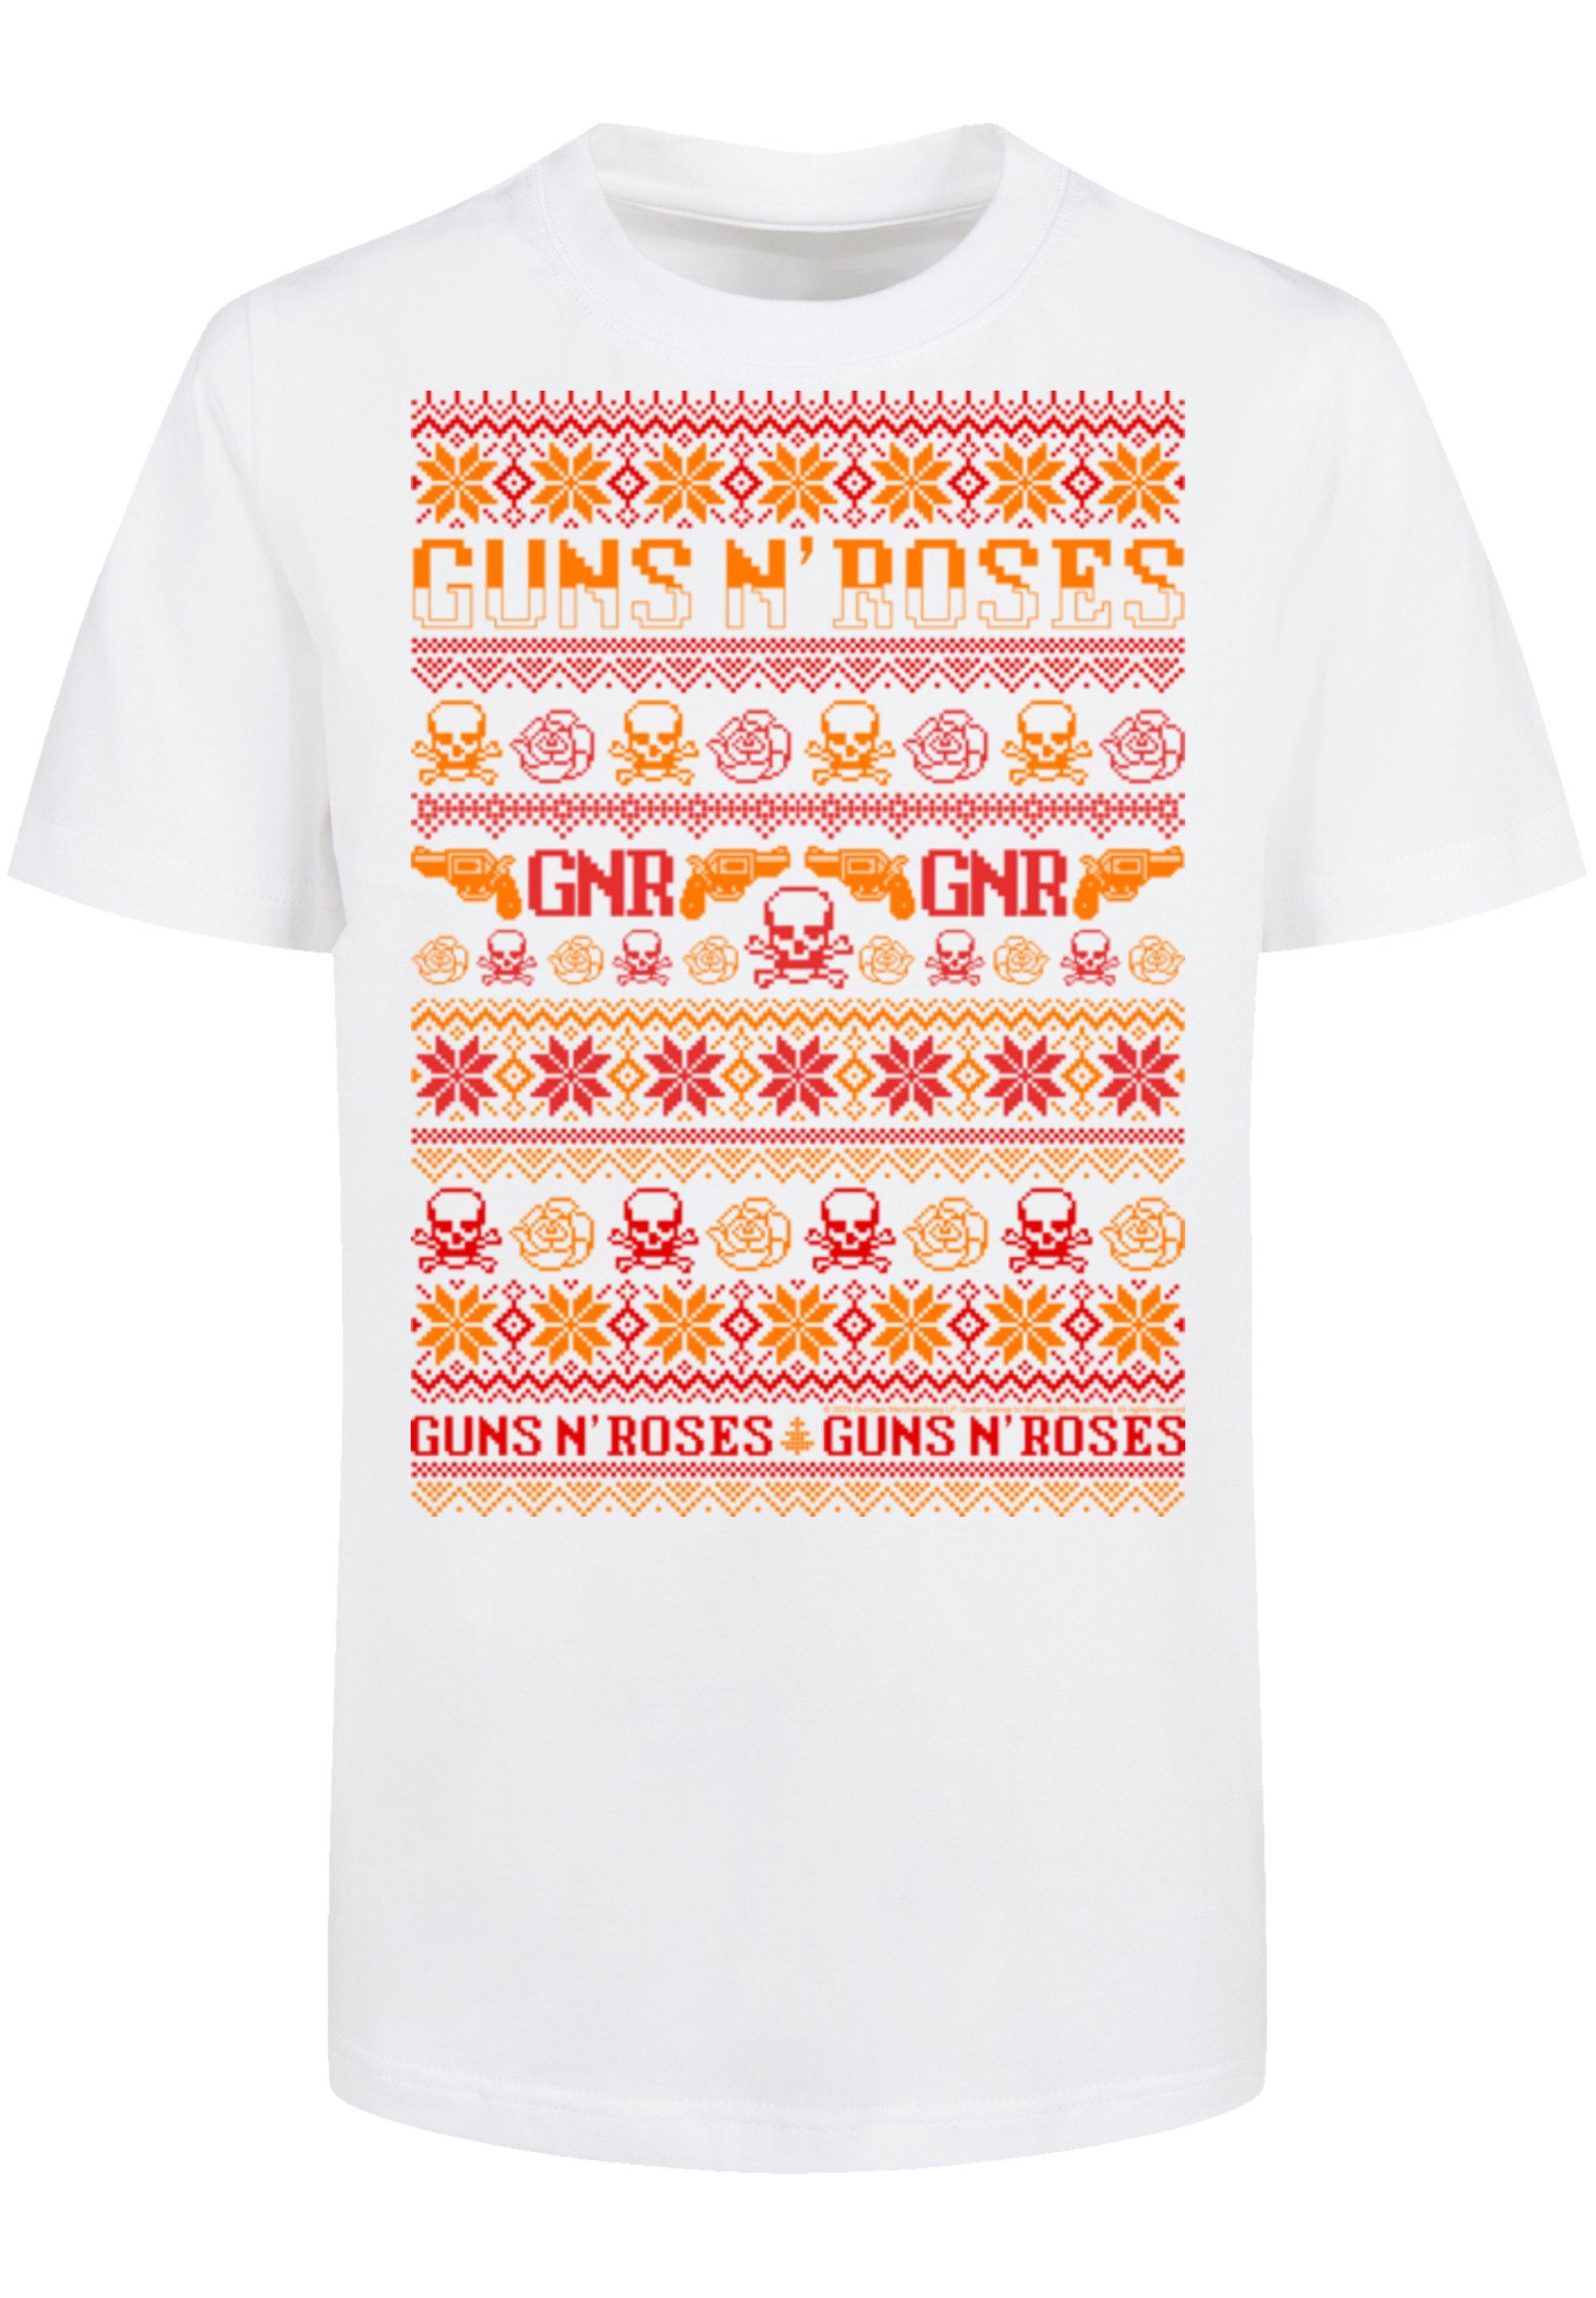 T-Shirt n' Roses Guns F4NT4STIC weiß Weihnachten Musik,Band,Logo Christmas